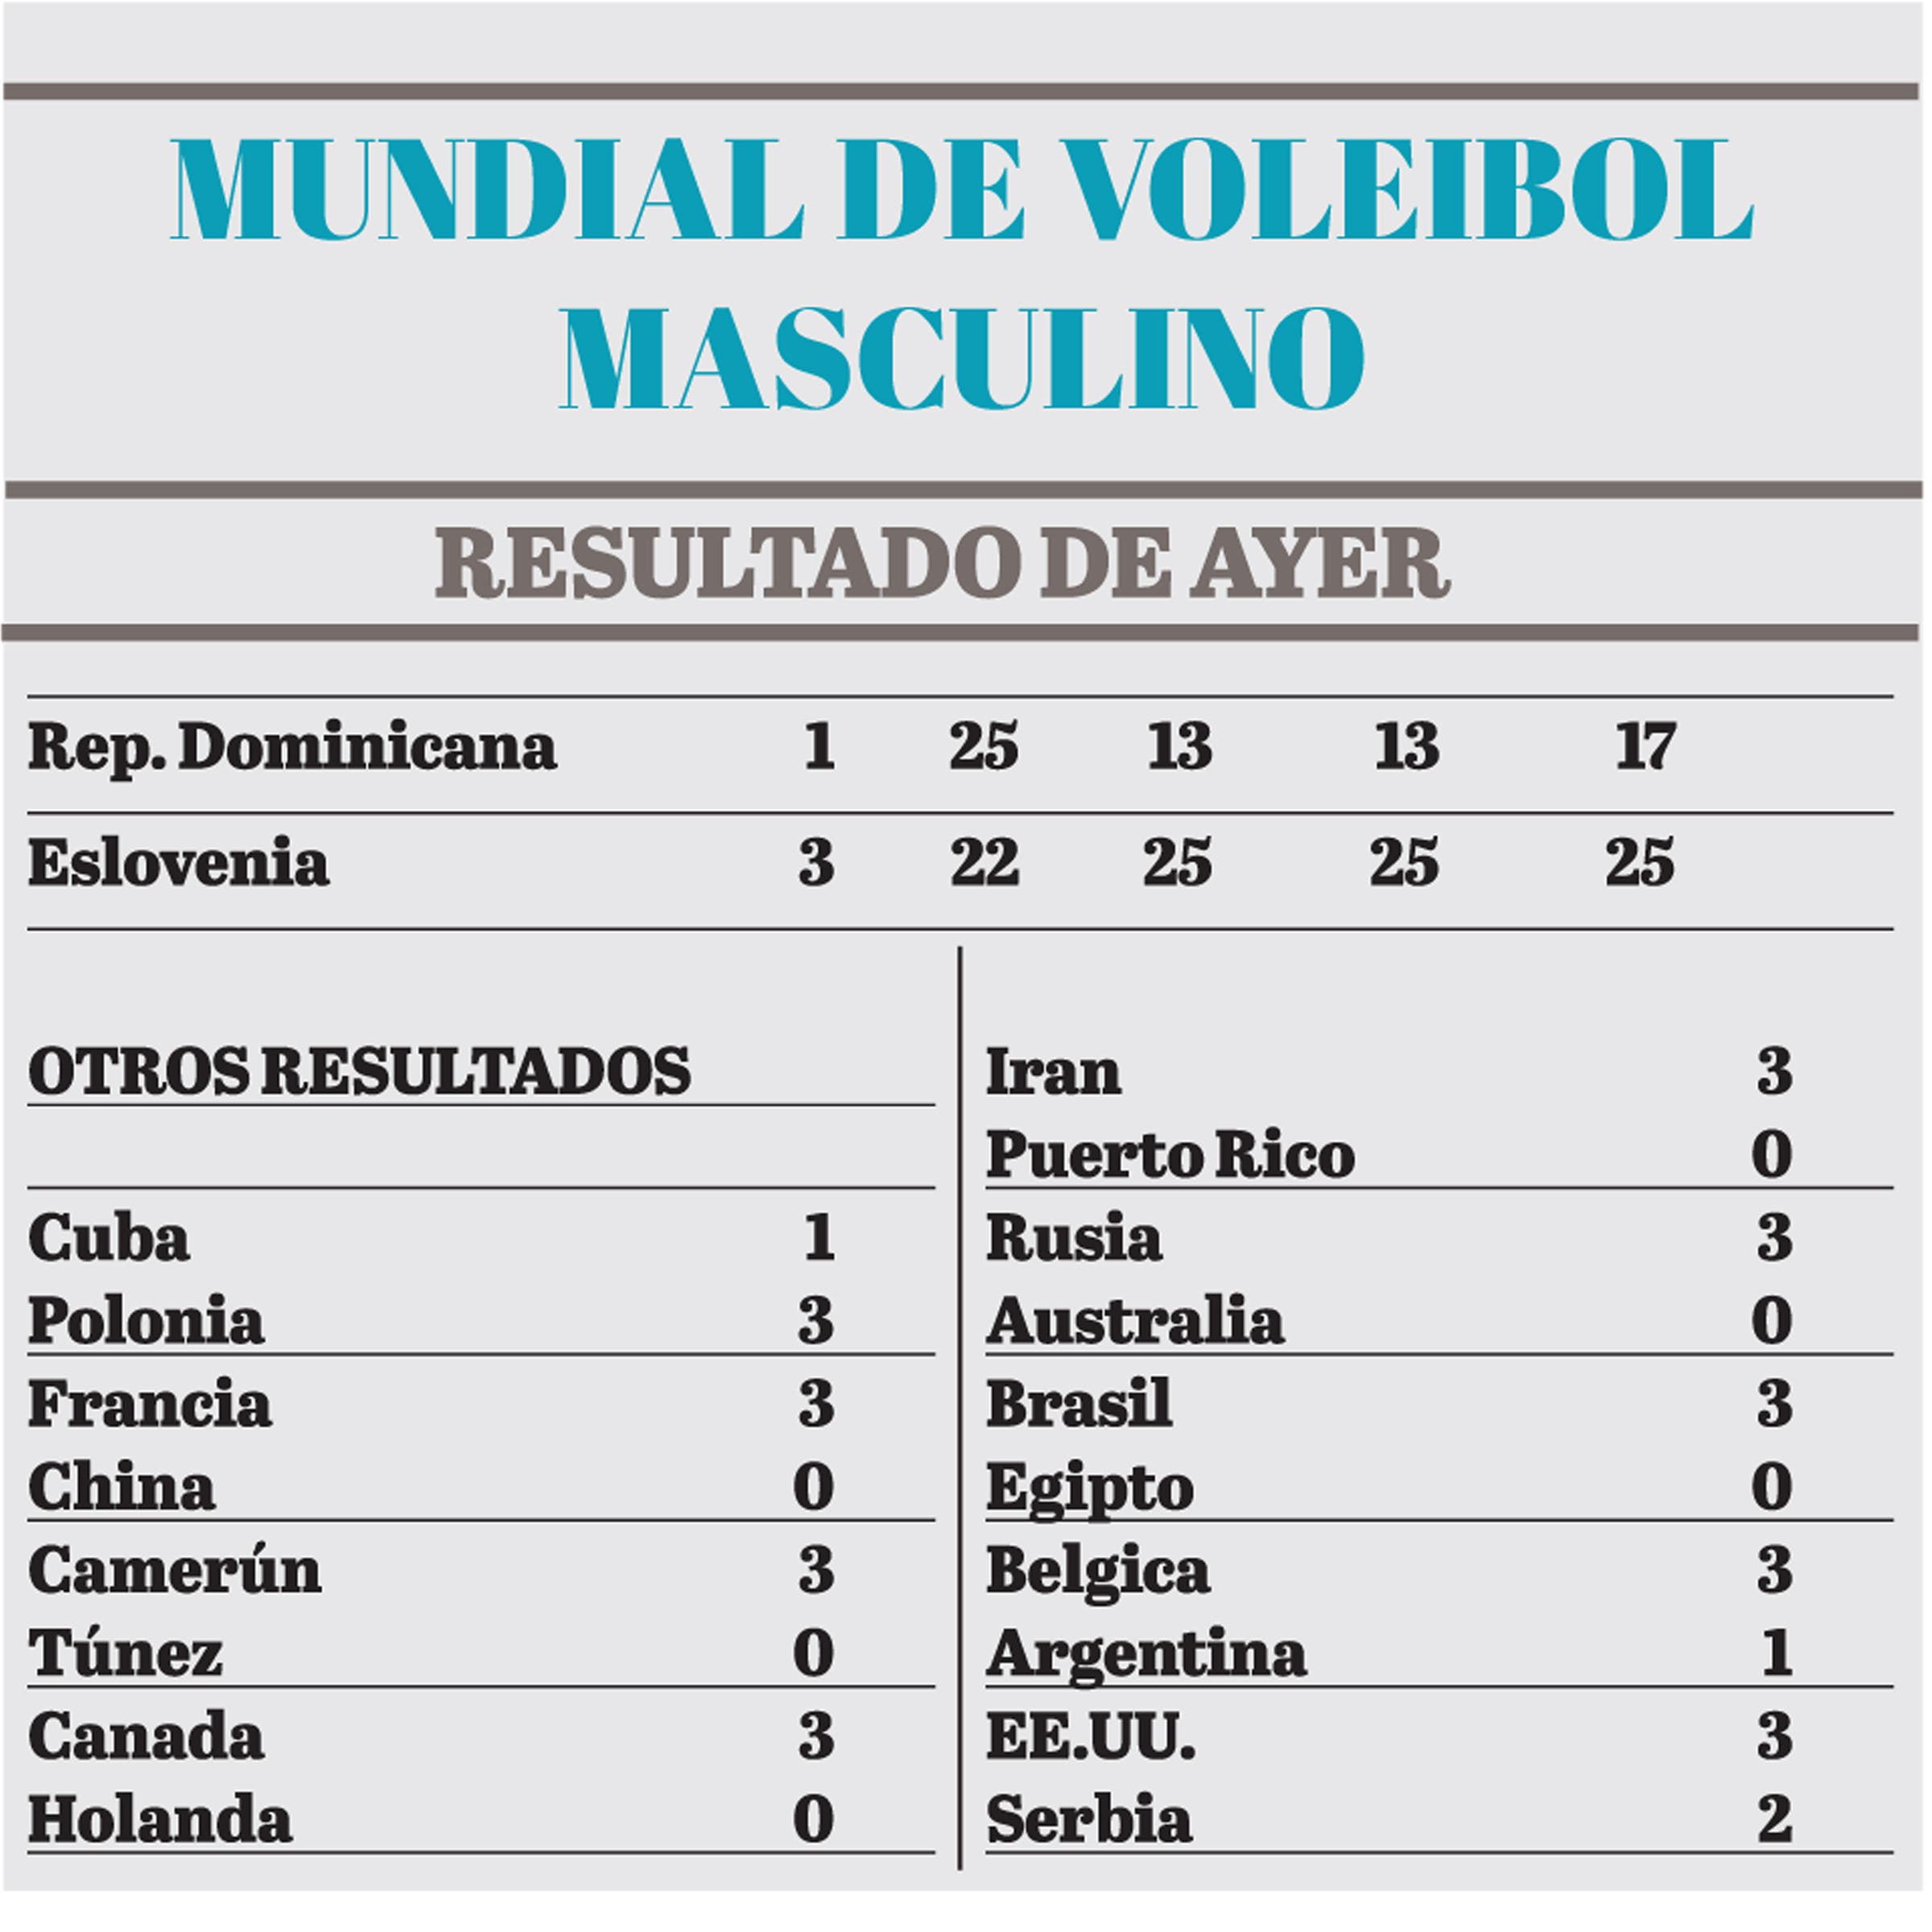 República Dominicana  pierde ante Eslovenia en Mundial de Voleibol